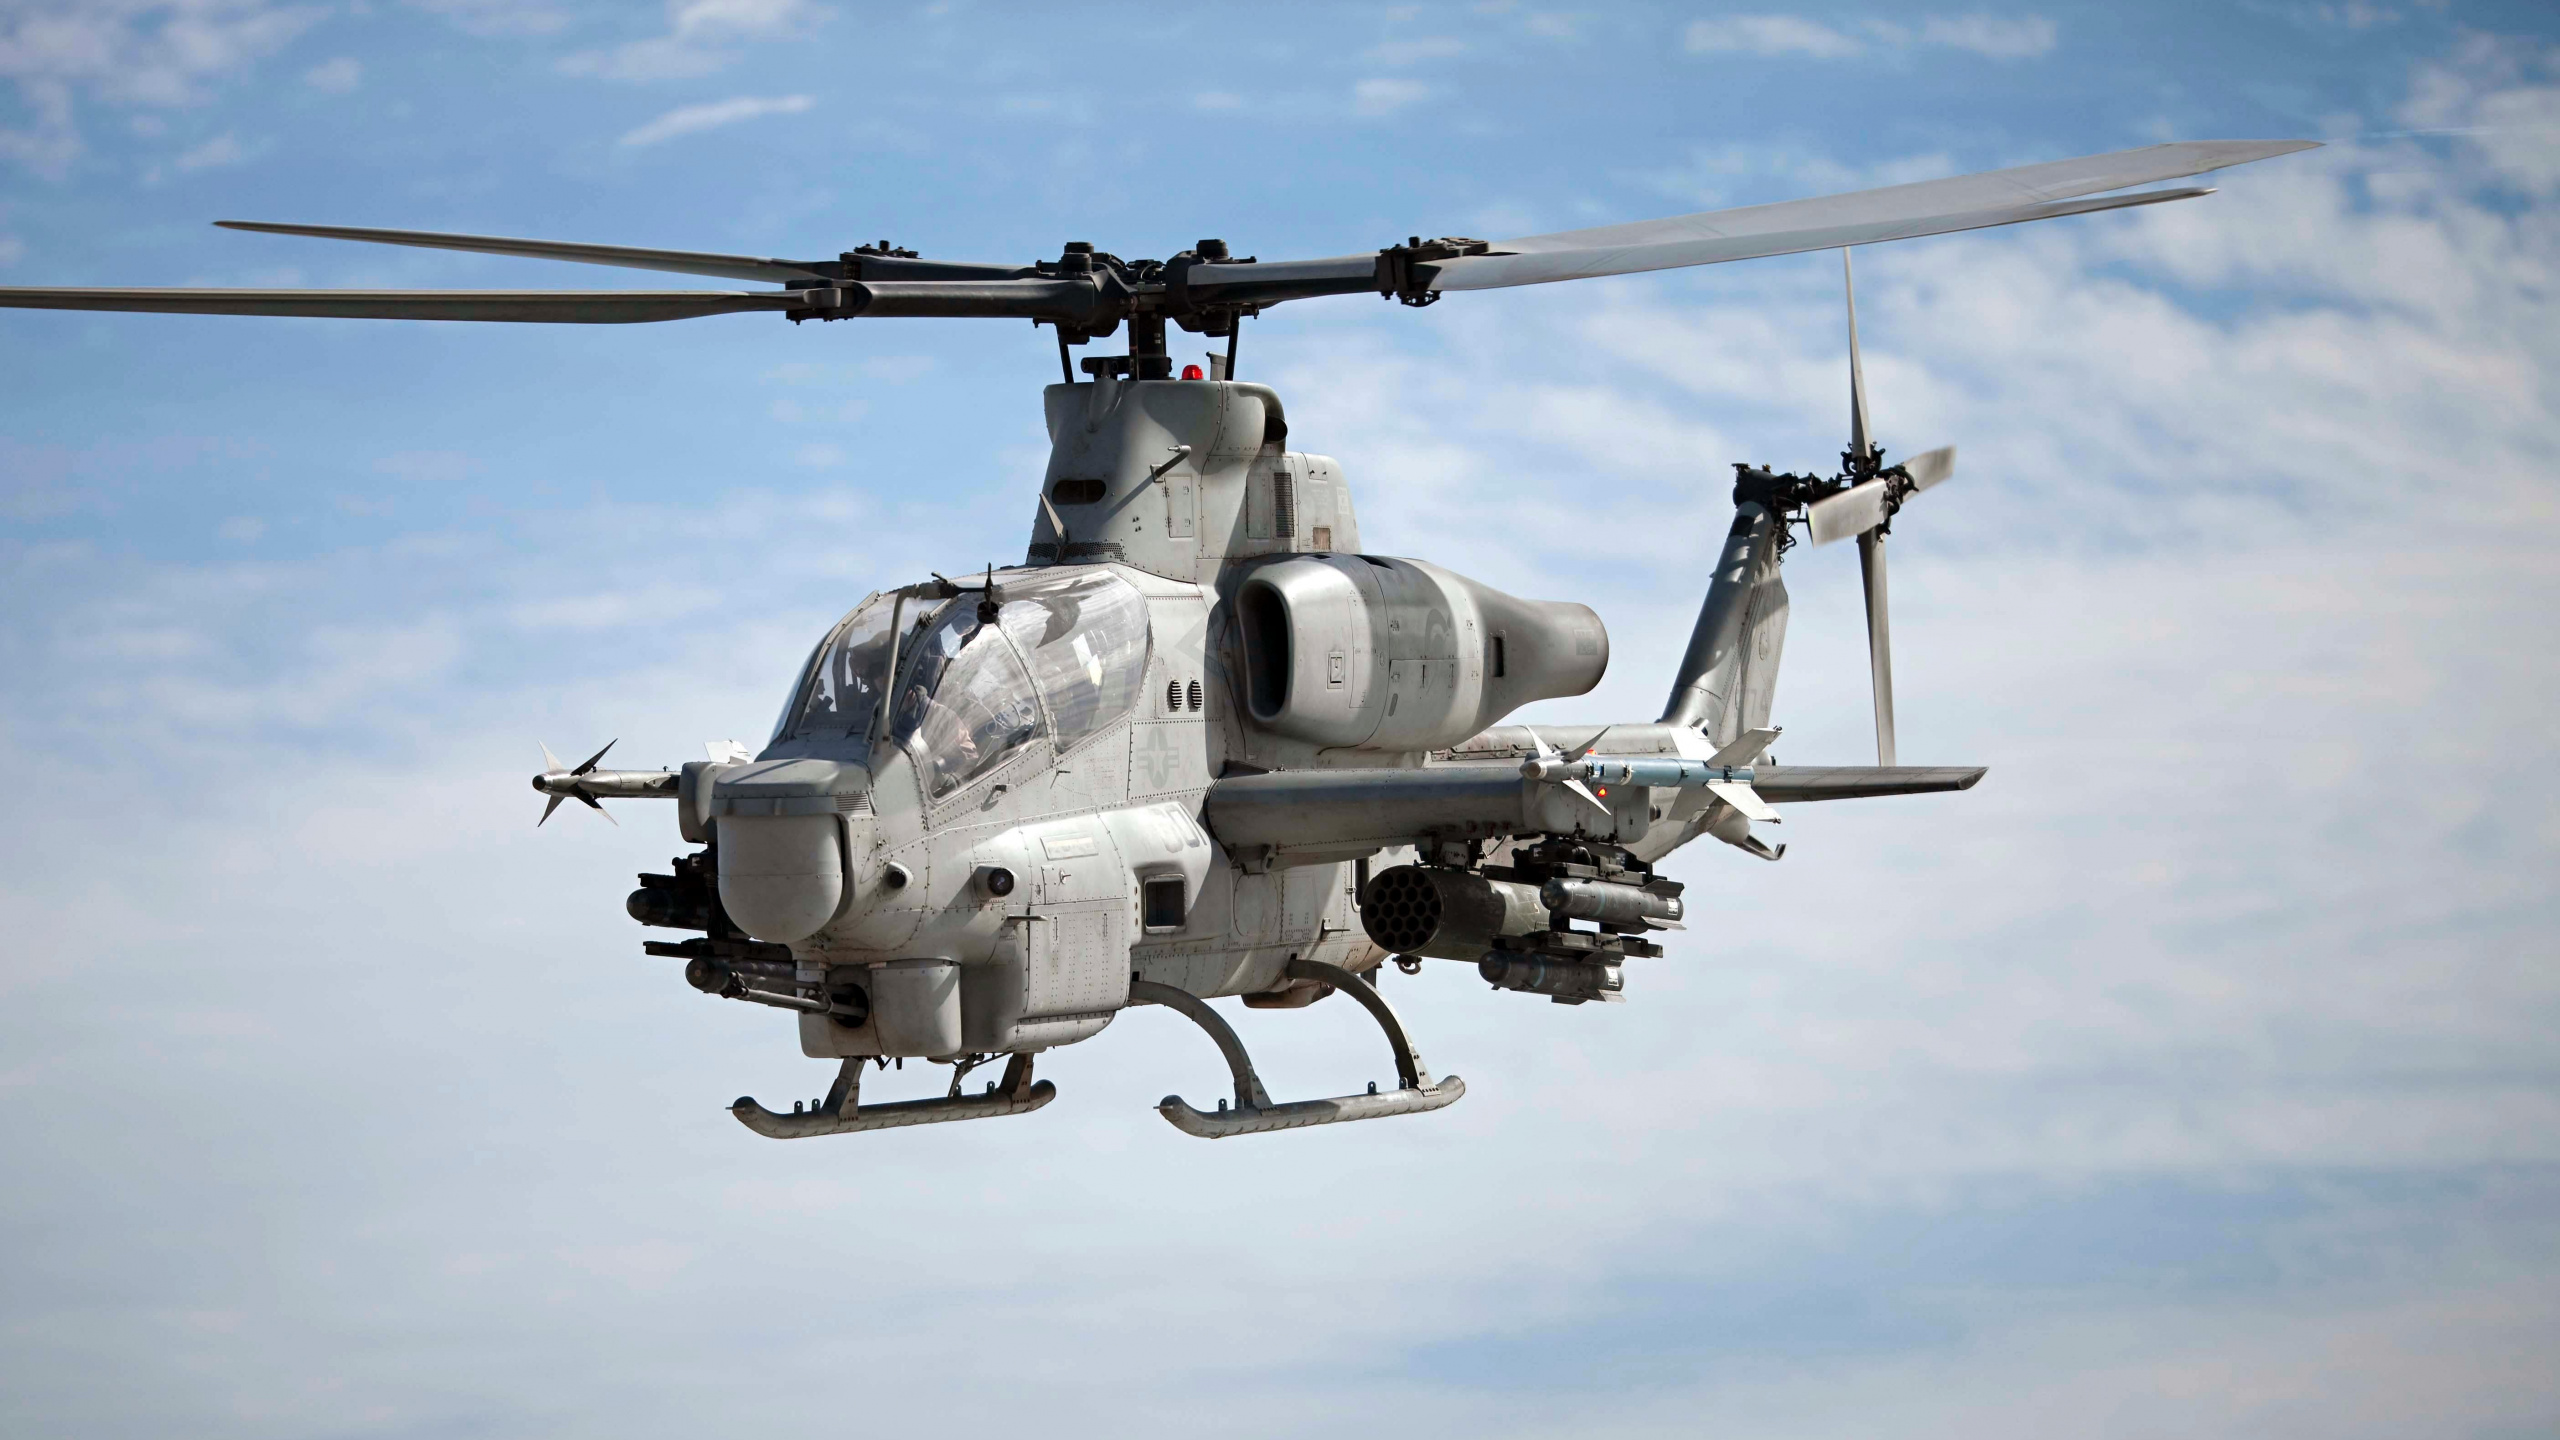 直升机, 攻击直升机, 美国海军陆战队, 军用直升机, 直升机转子的 壁纸 2560x1440 允许